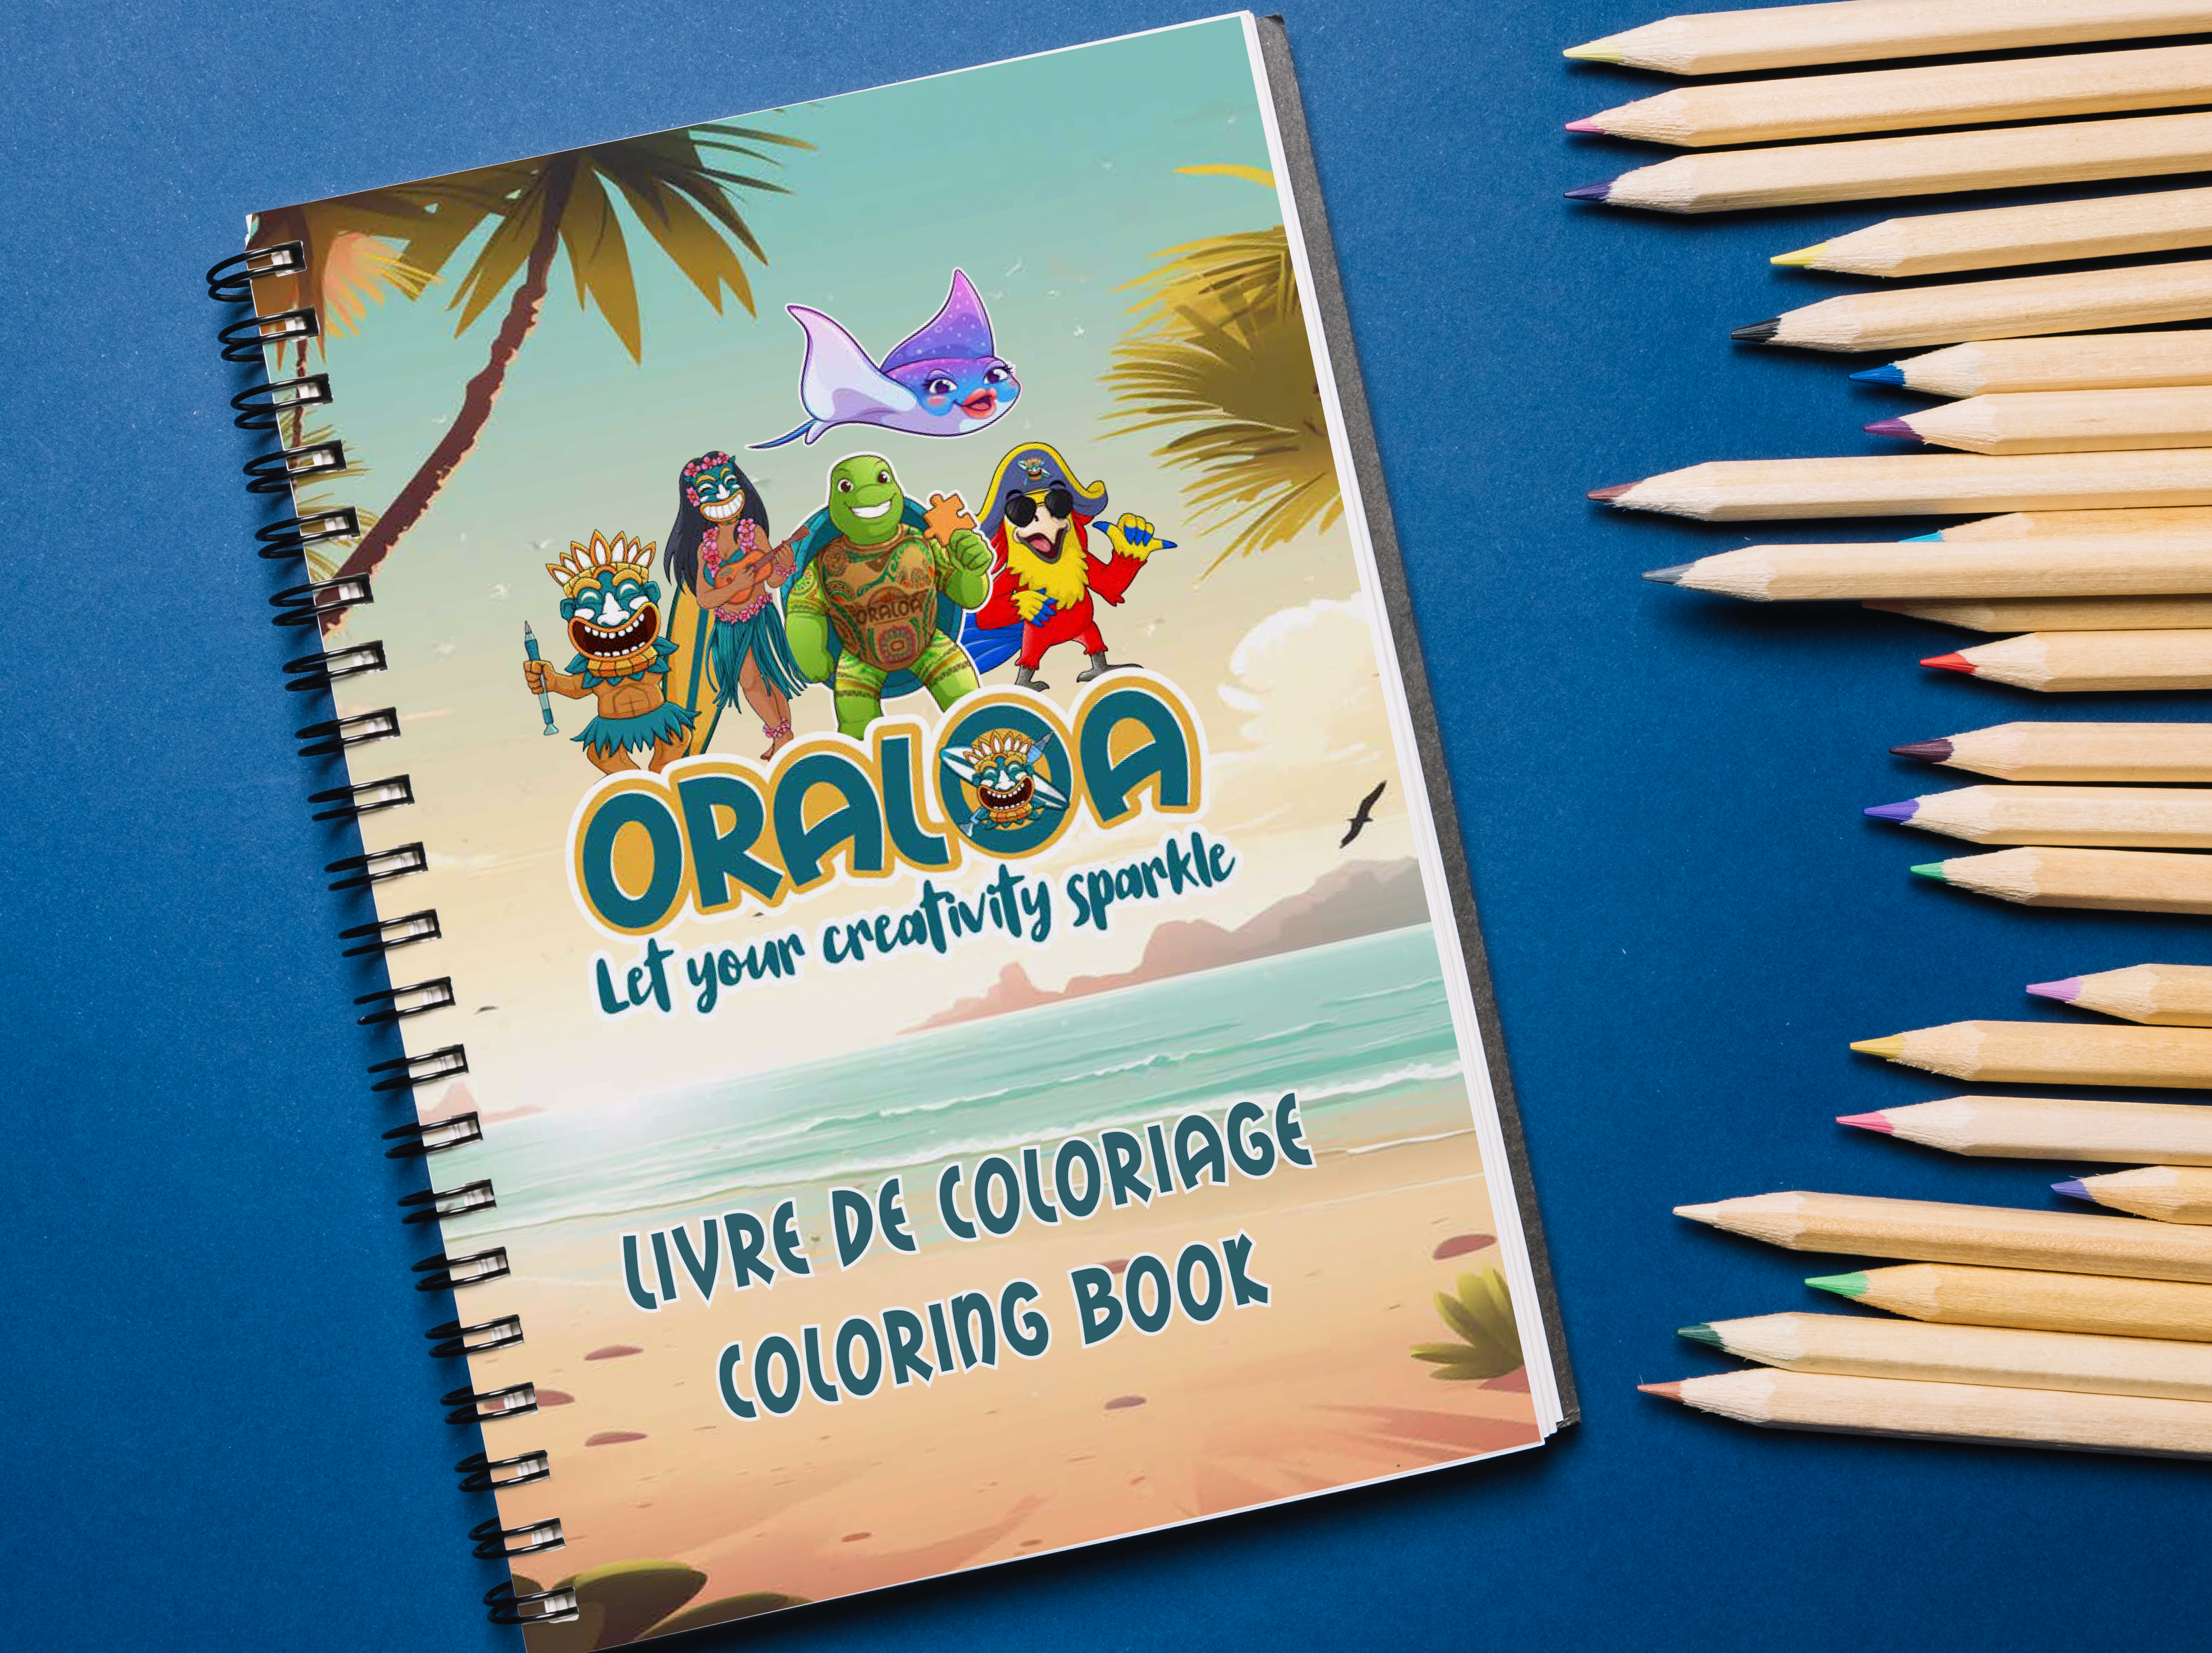 Libro para colorear de Oraloa y los artistas